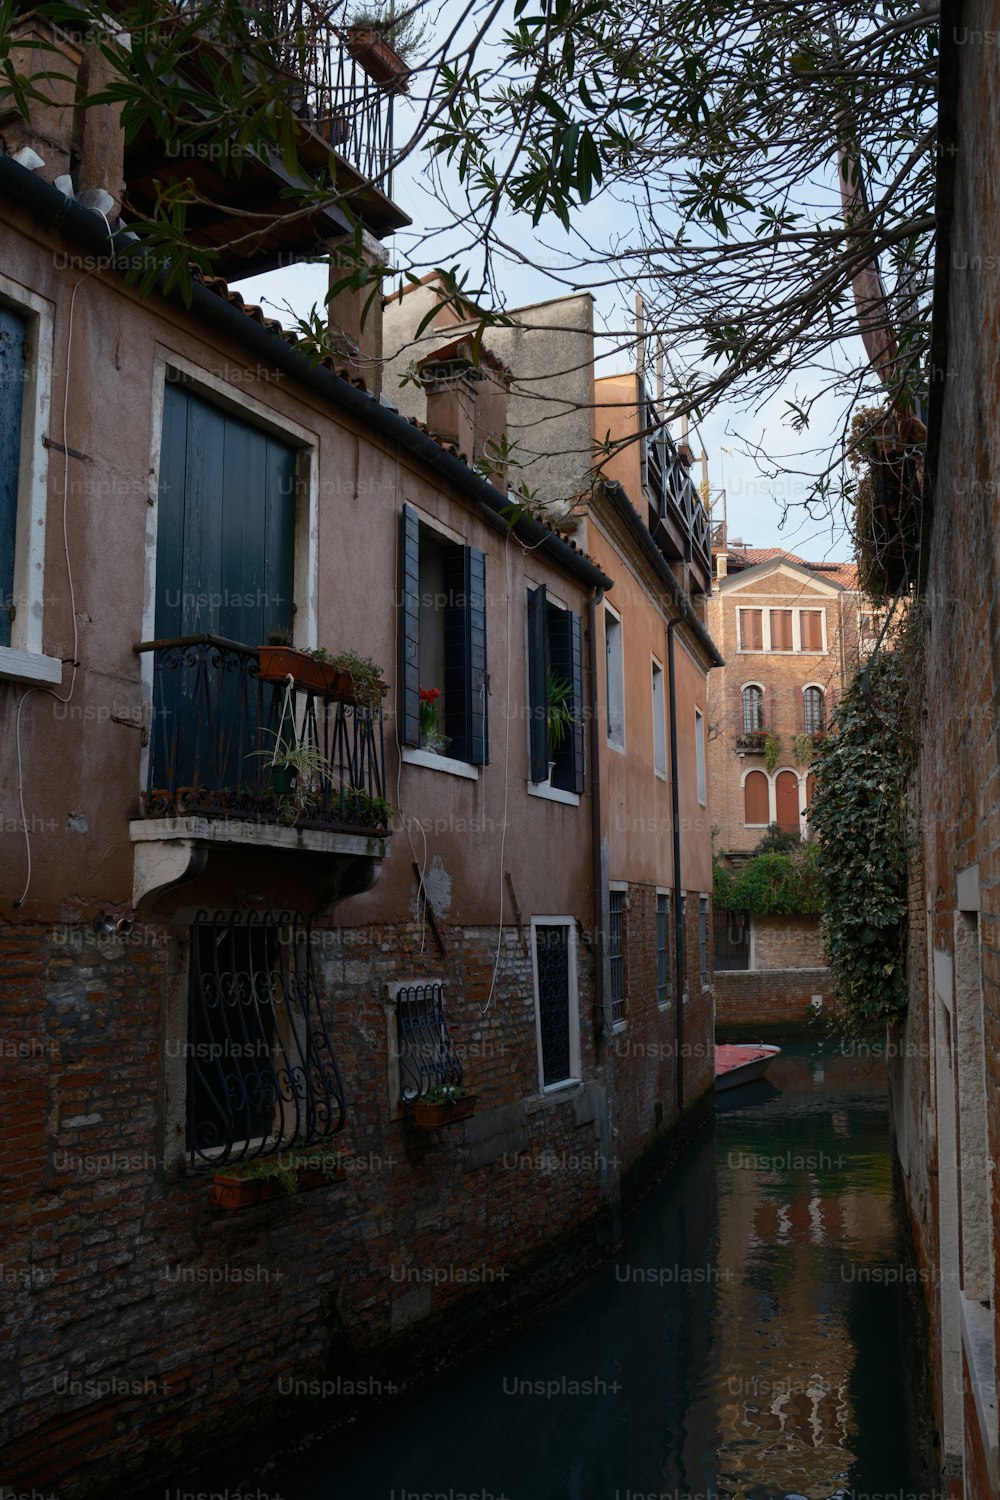 Un canal étroit relie deux bâtiments